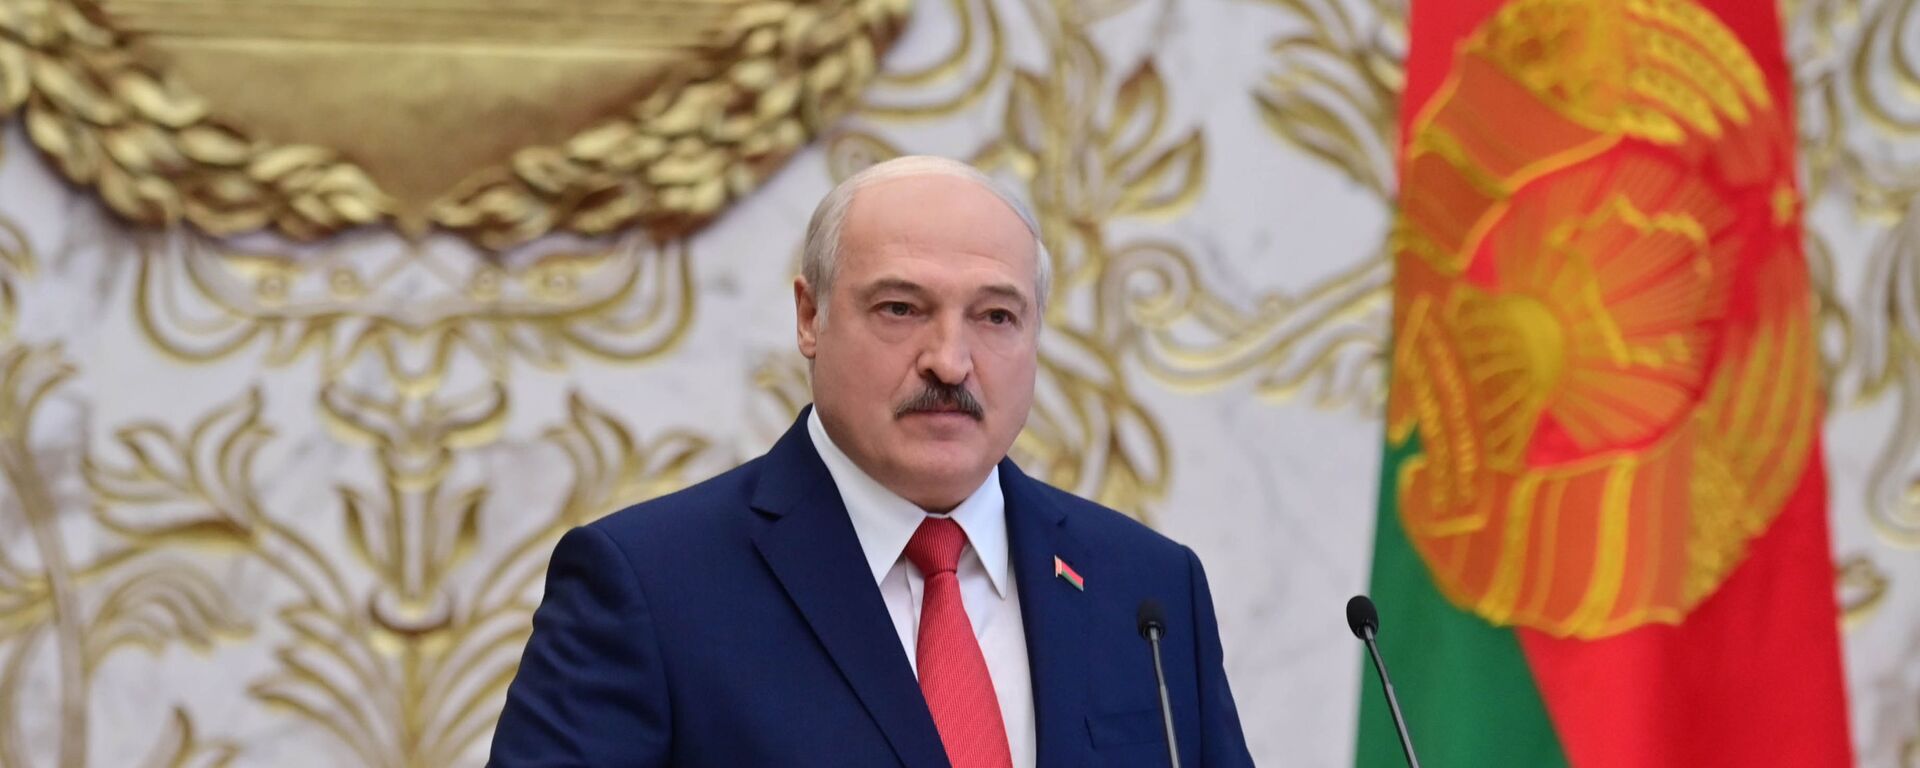 La investidura de Alexandr Lukashenko en Bielorrusia - Sputnik Mundo, 1920, 30.03.2021